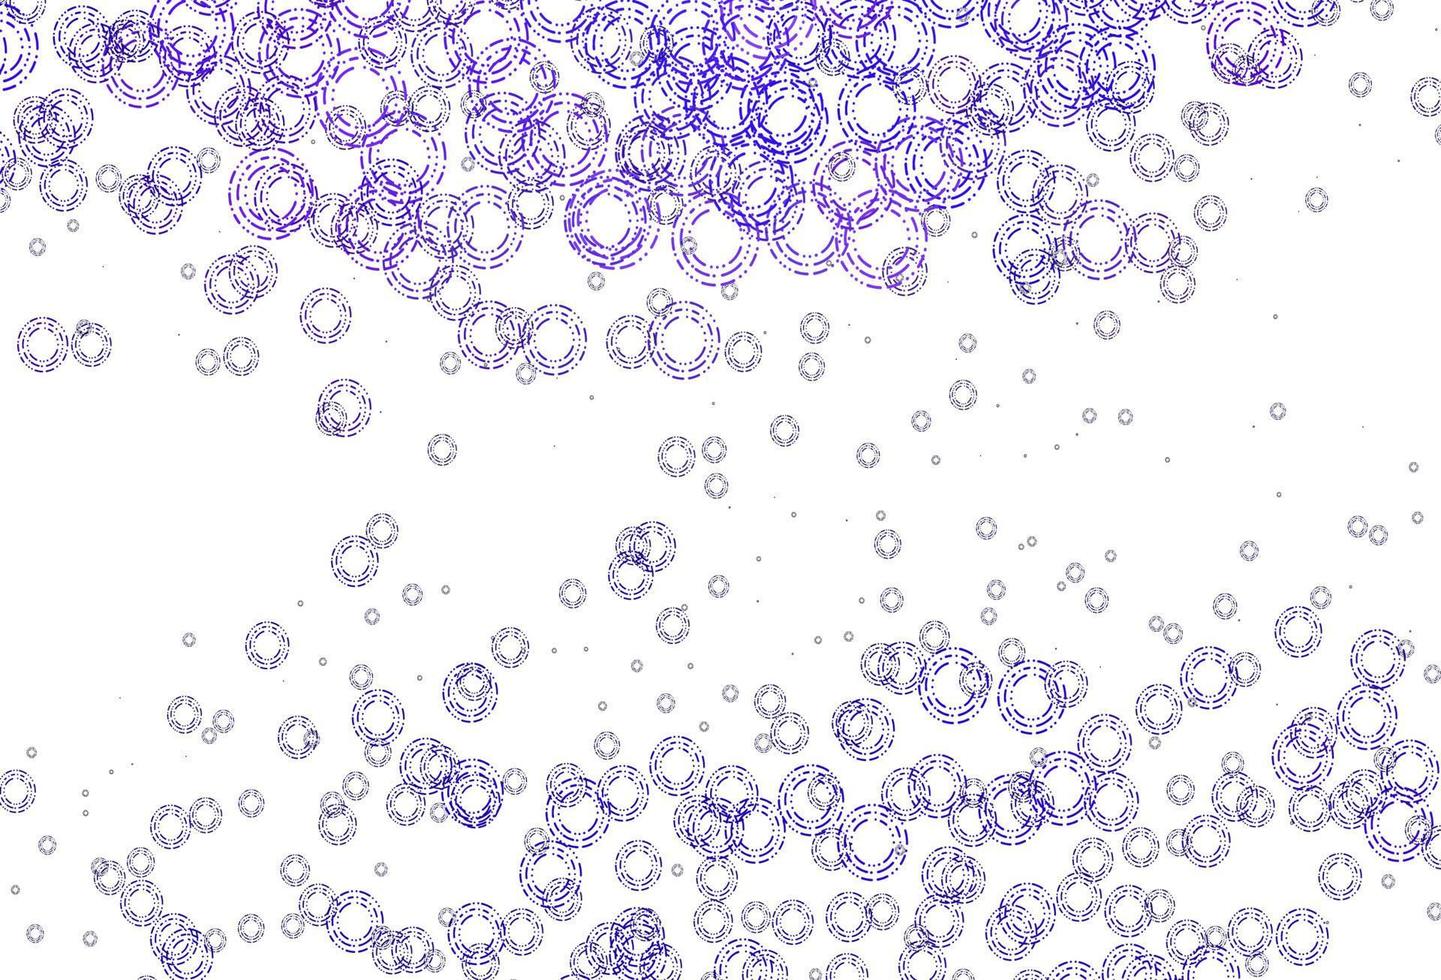 modèle vectoriel violet clair avec des sphères.